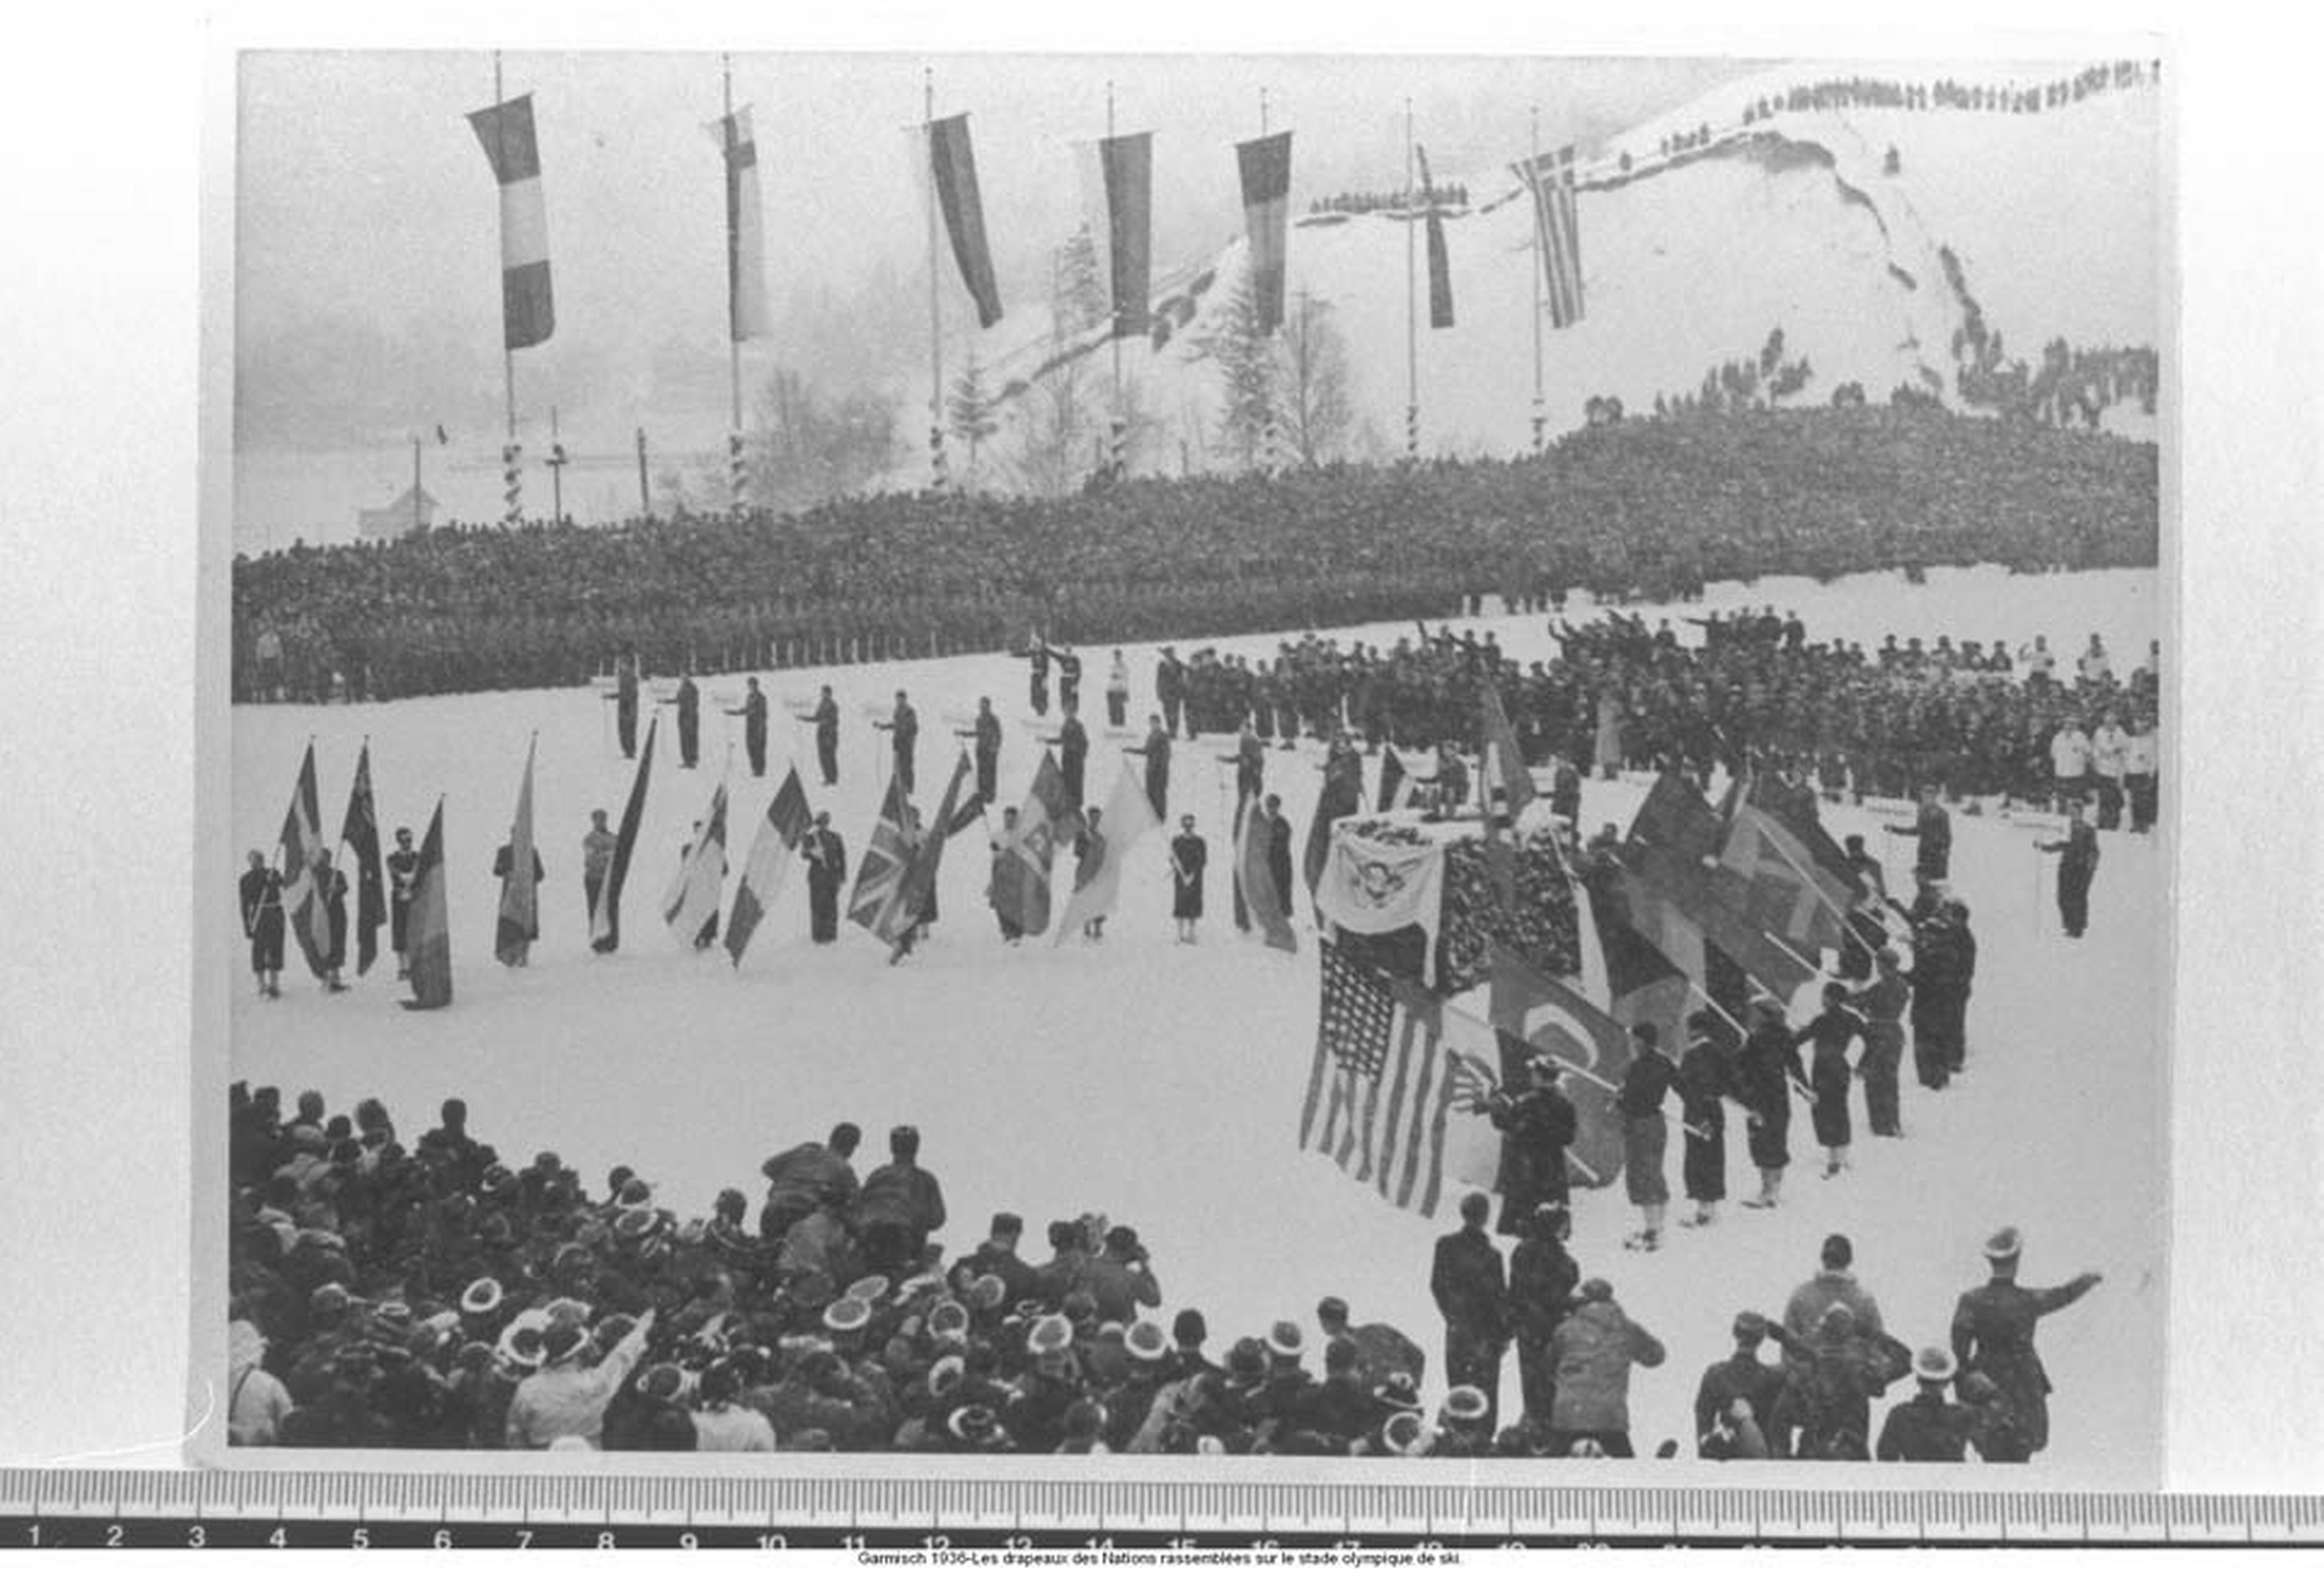 Bendera-bendera negara peserta Olimpiade berkibar di Berlin tahun 1936. Foto dari olympic.org 